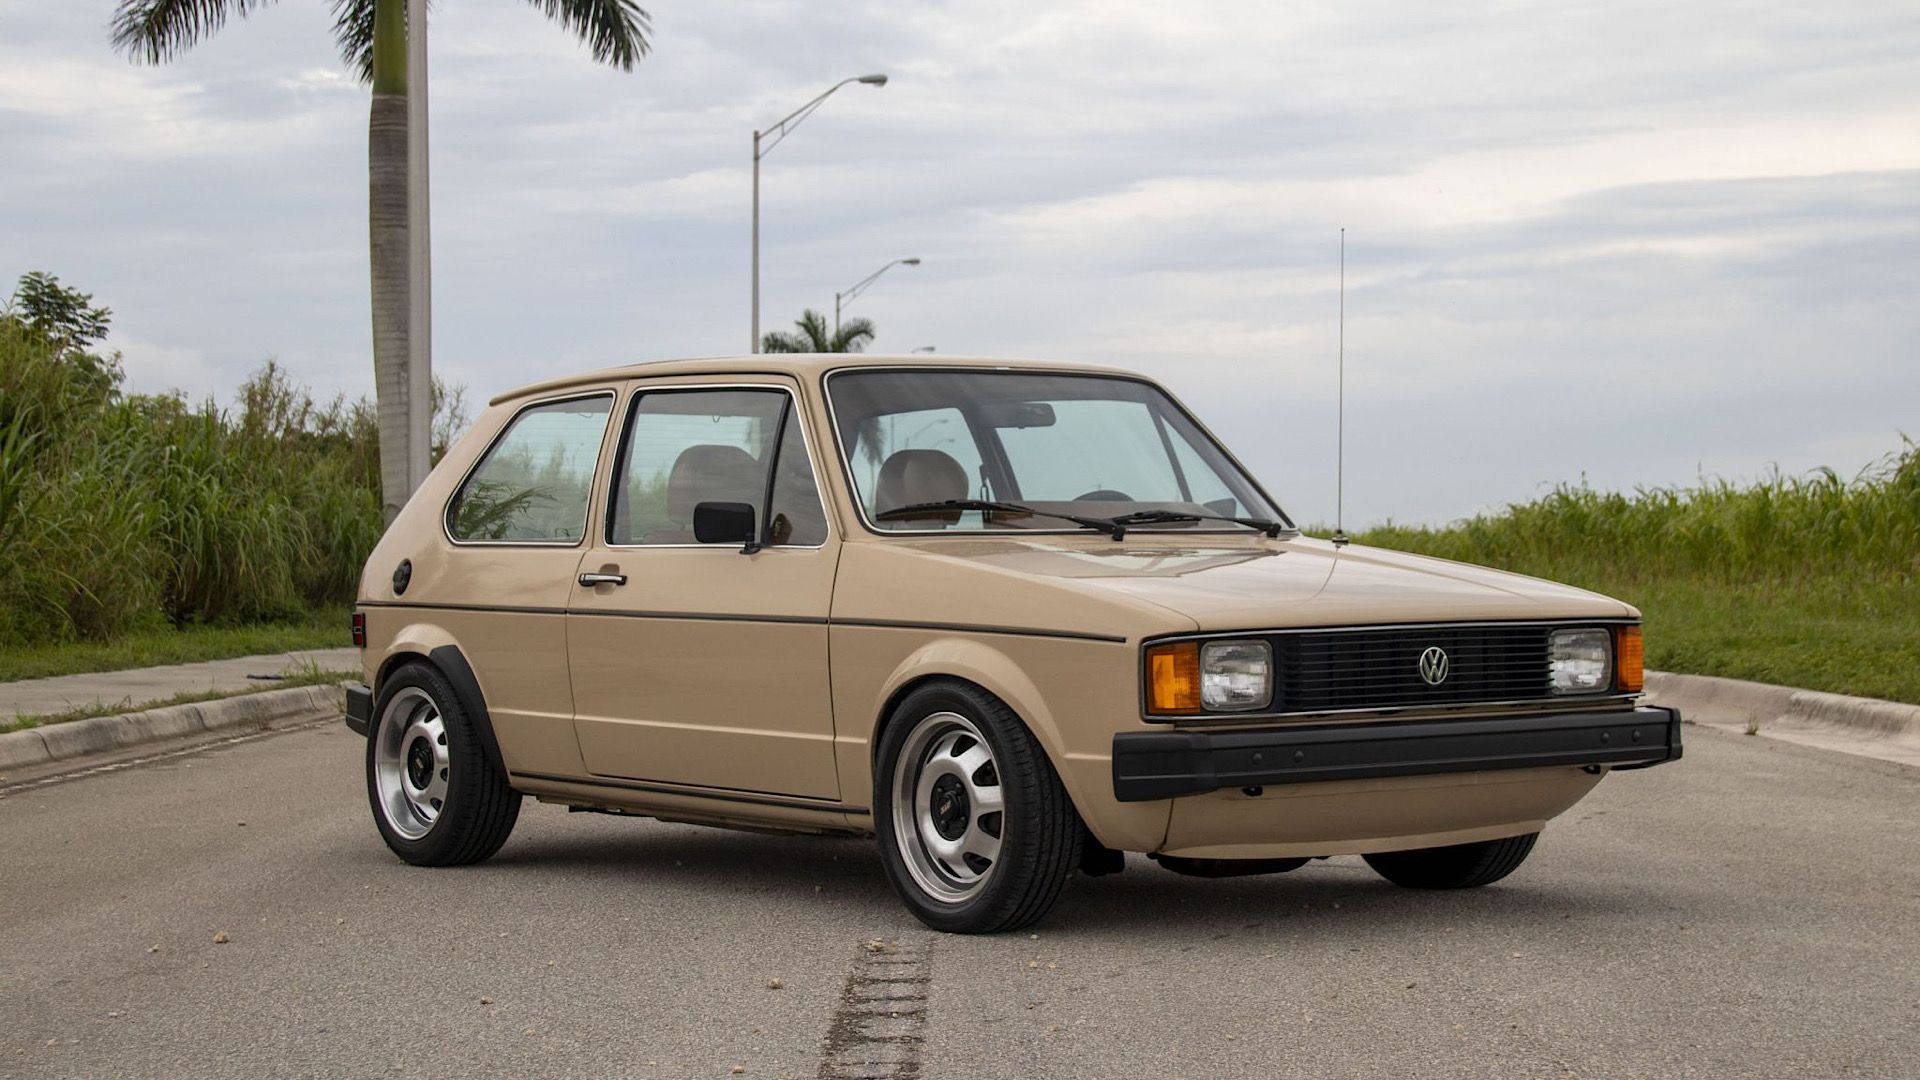 1982 Volkswagen Rabbit L 2-Door 4-Speed in beige Posing on road